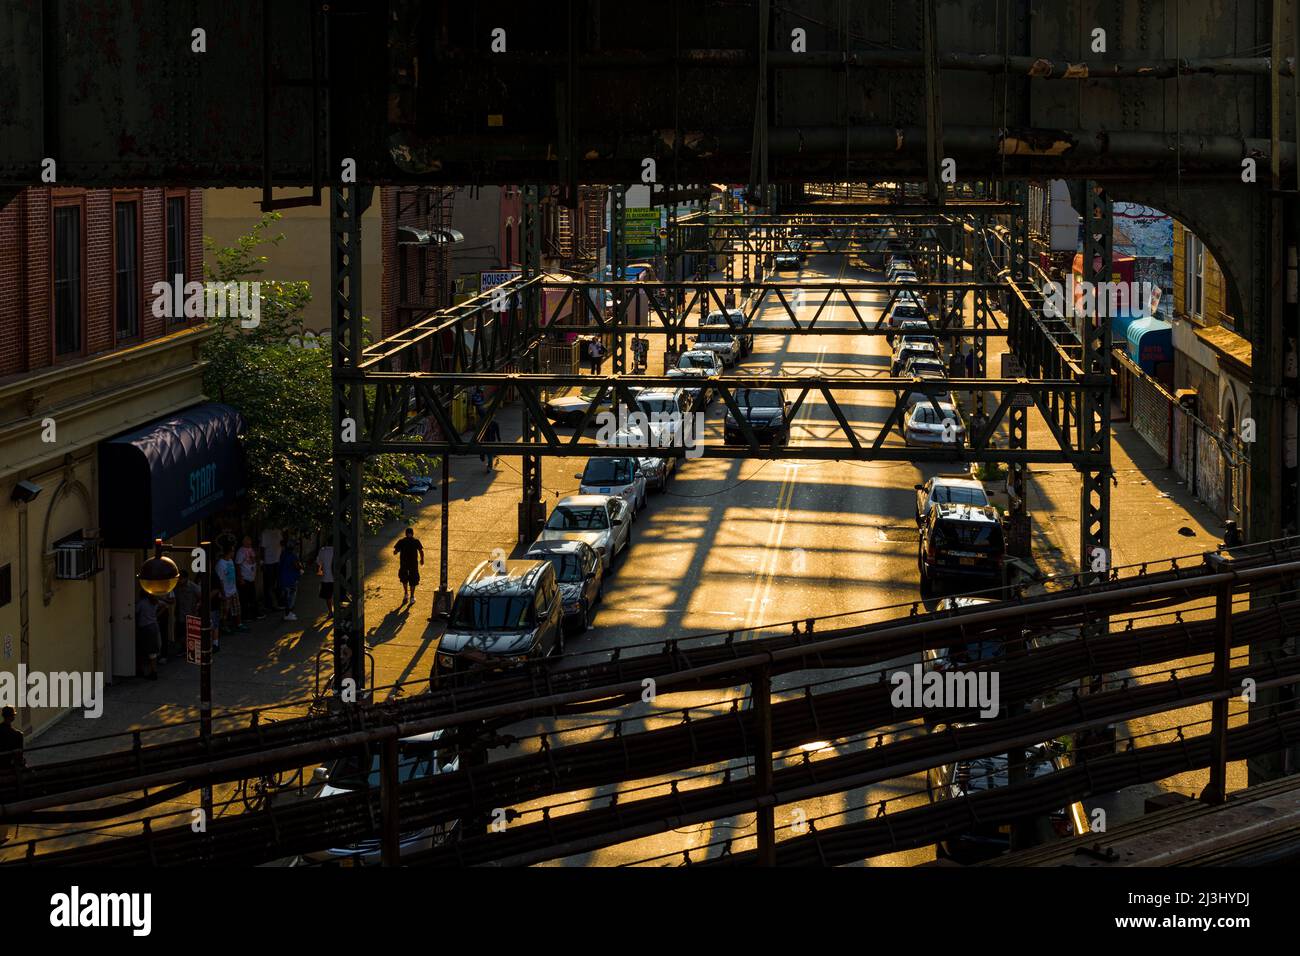 BROADWAY/MYRTLE AV, New York City, NY, USA, luci di mattina presto alla stazione della metropolitana di Myrtle Avenue a Brooklyn. LINEE J, Z, M. Foto Stock